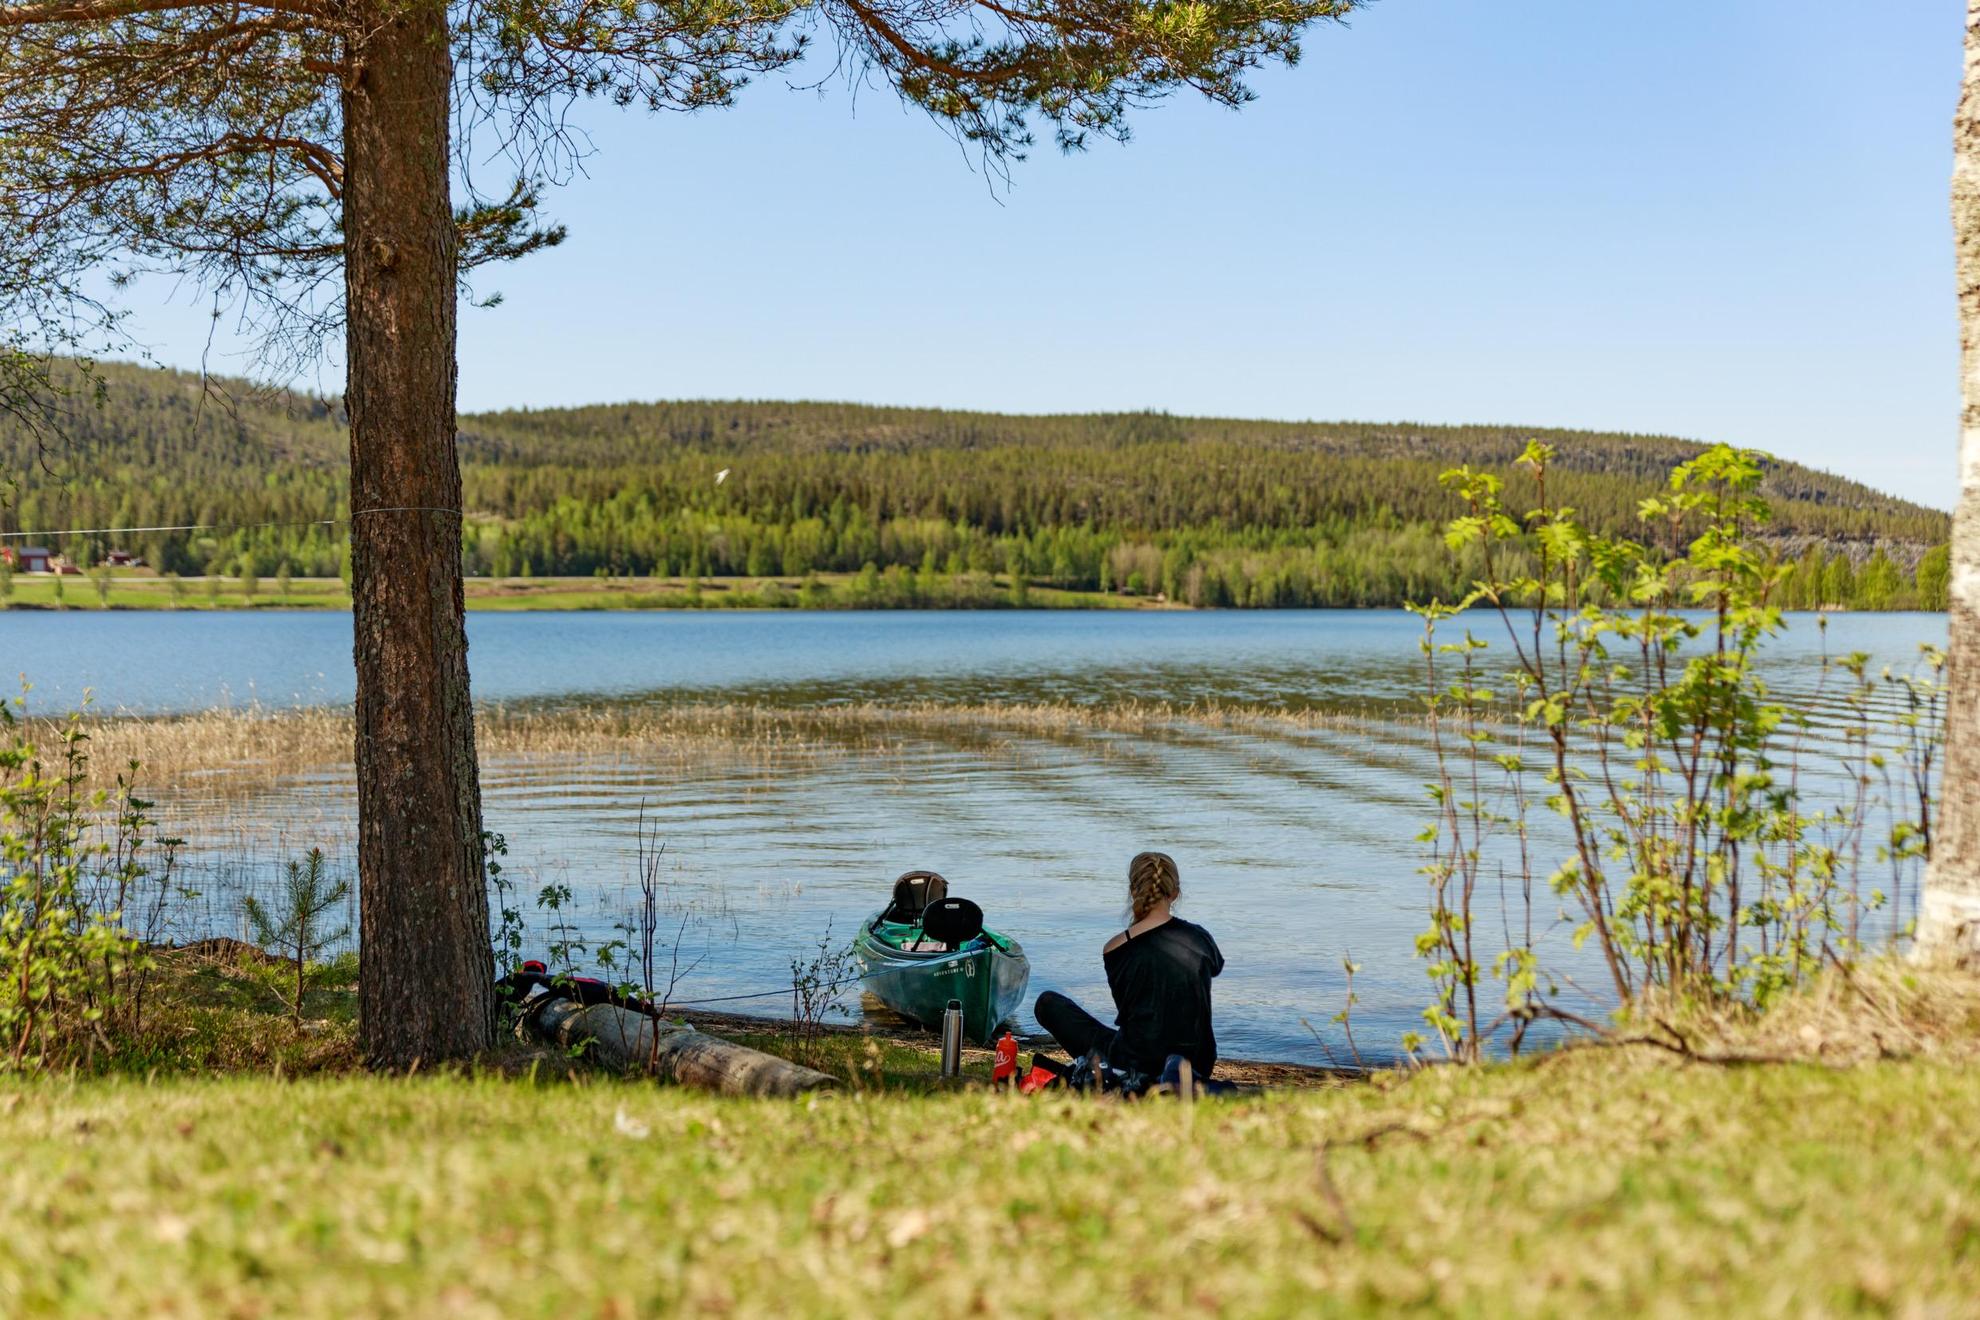 Une femme est assise sur la rive d'un lac avec son canoë au bord de l'eau. On aperçoit derrière le lac, une vaste forêt.